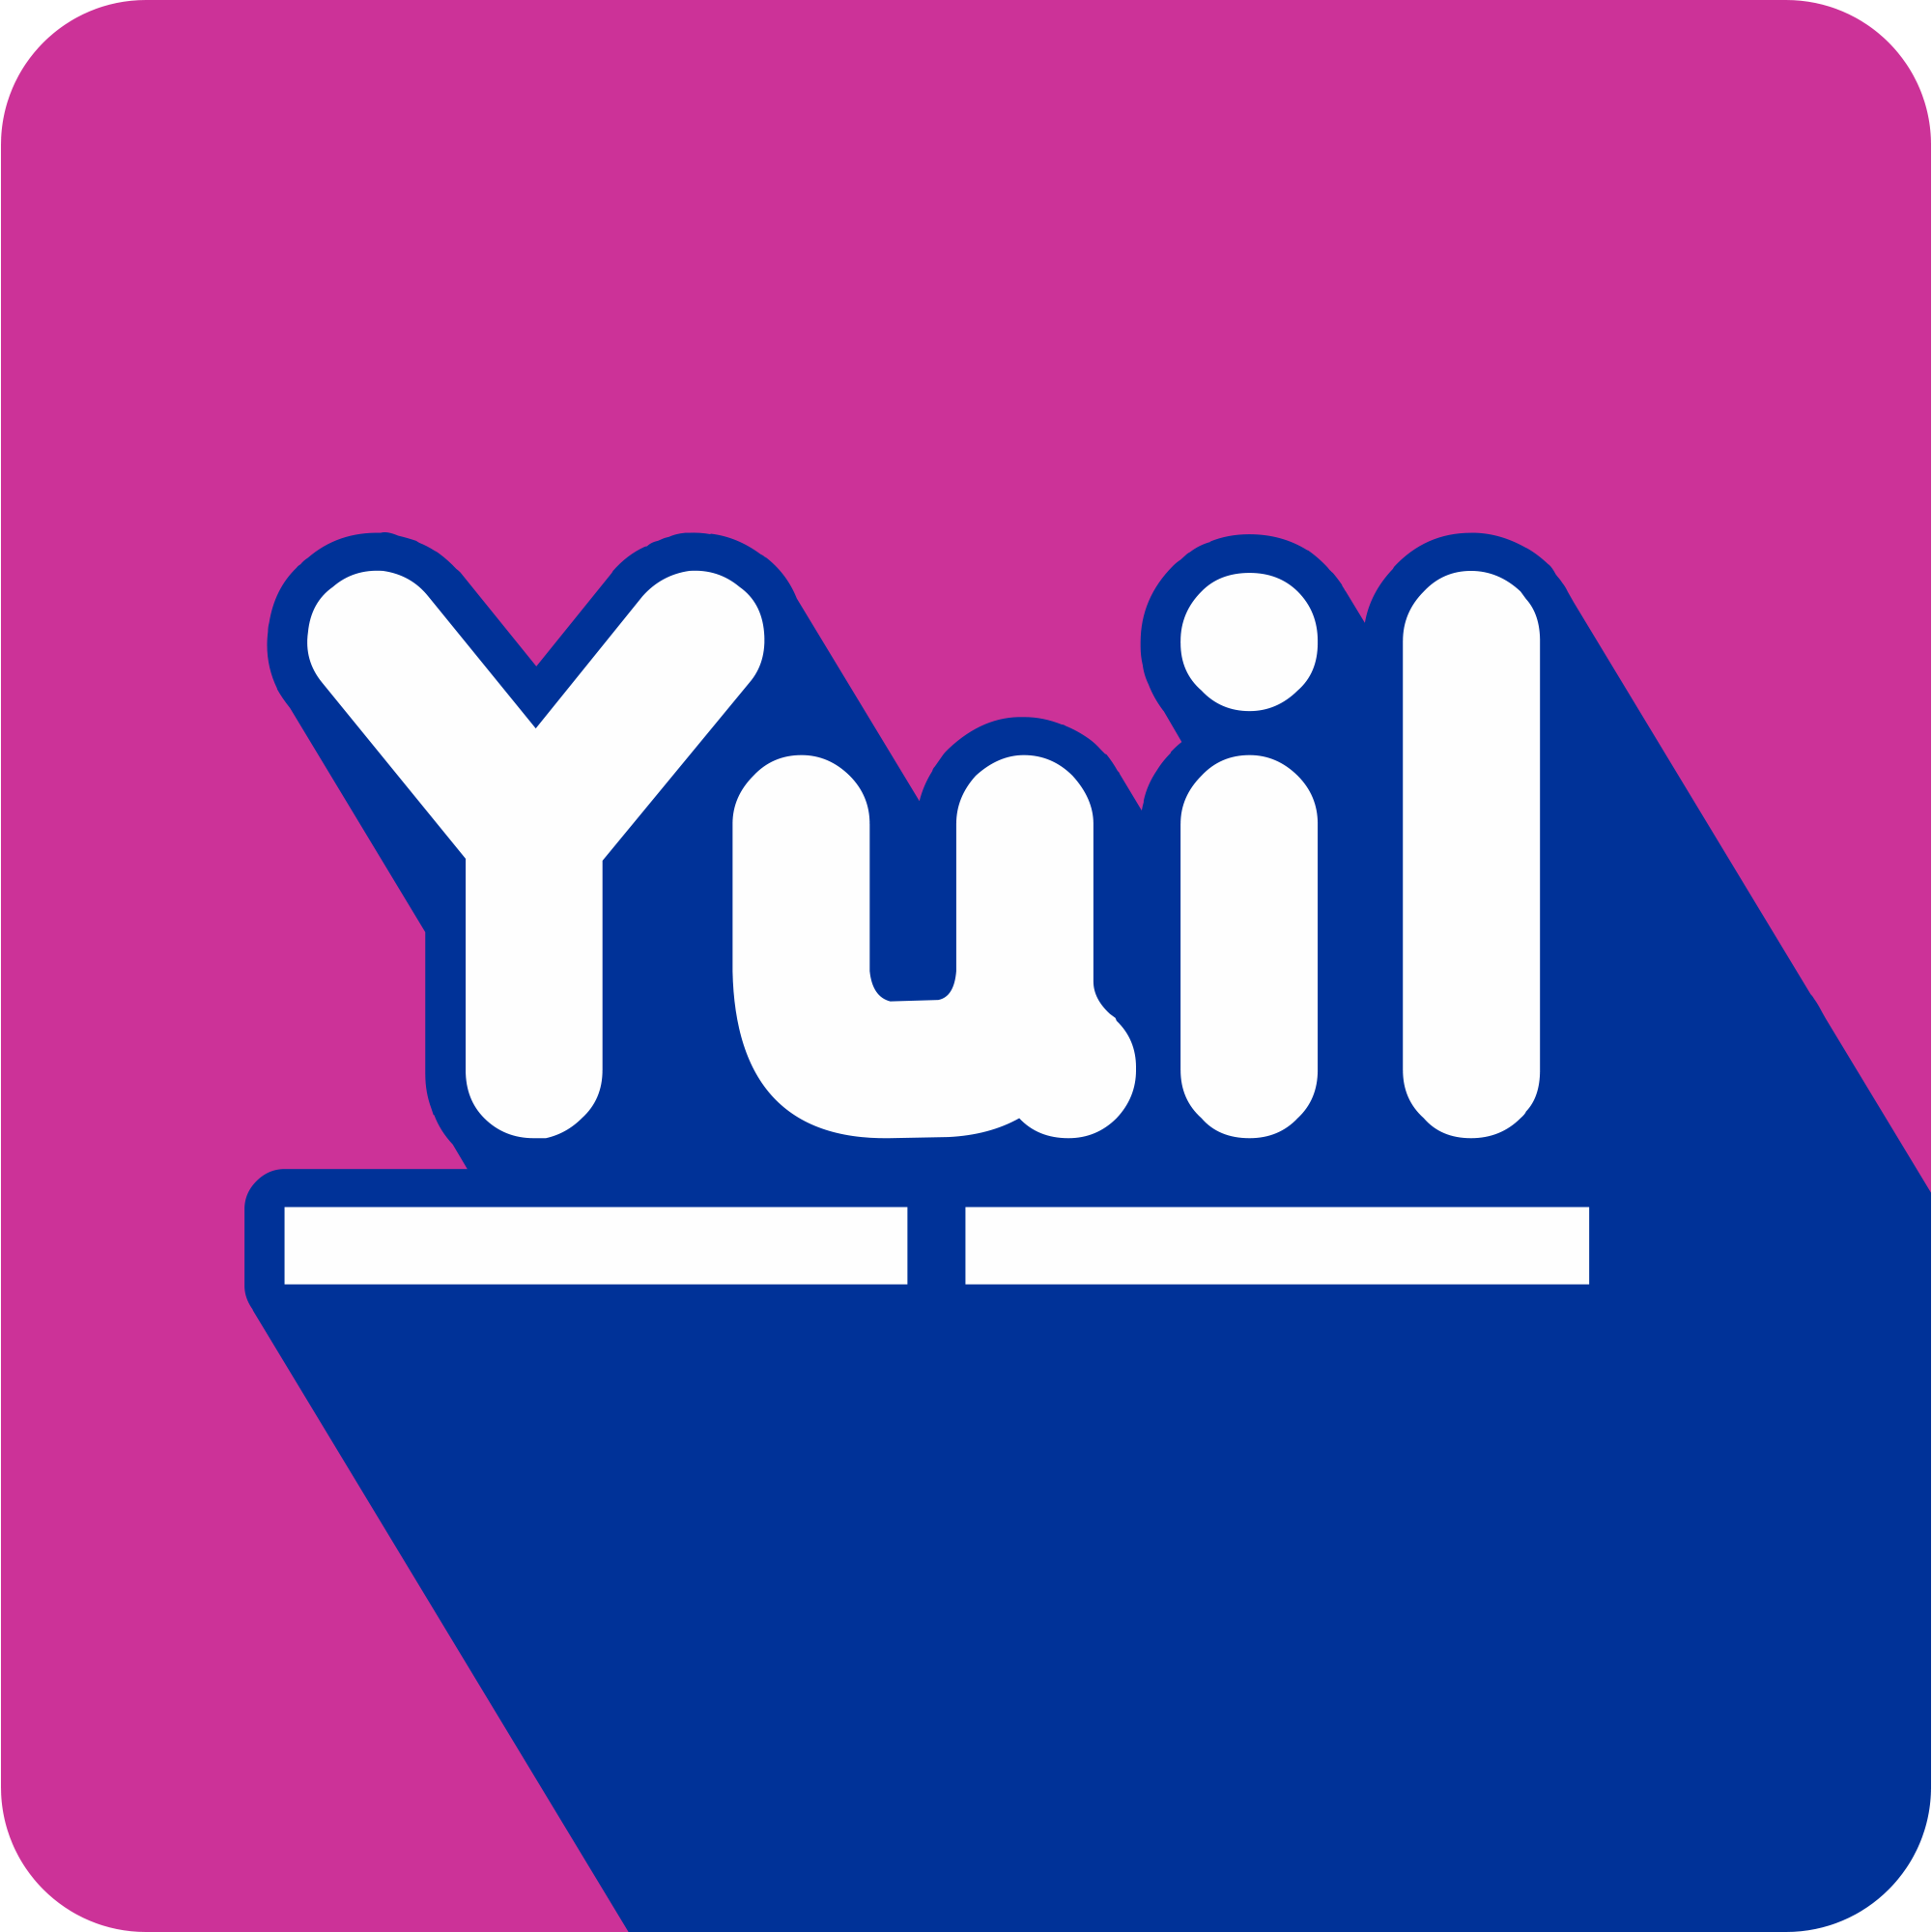 YUILTECH Co., Ltd.